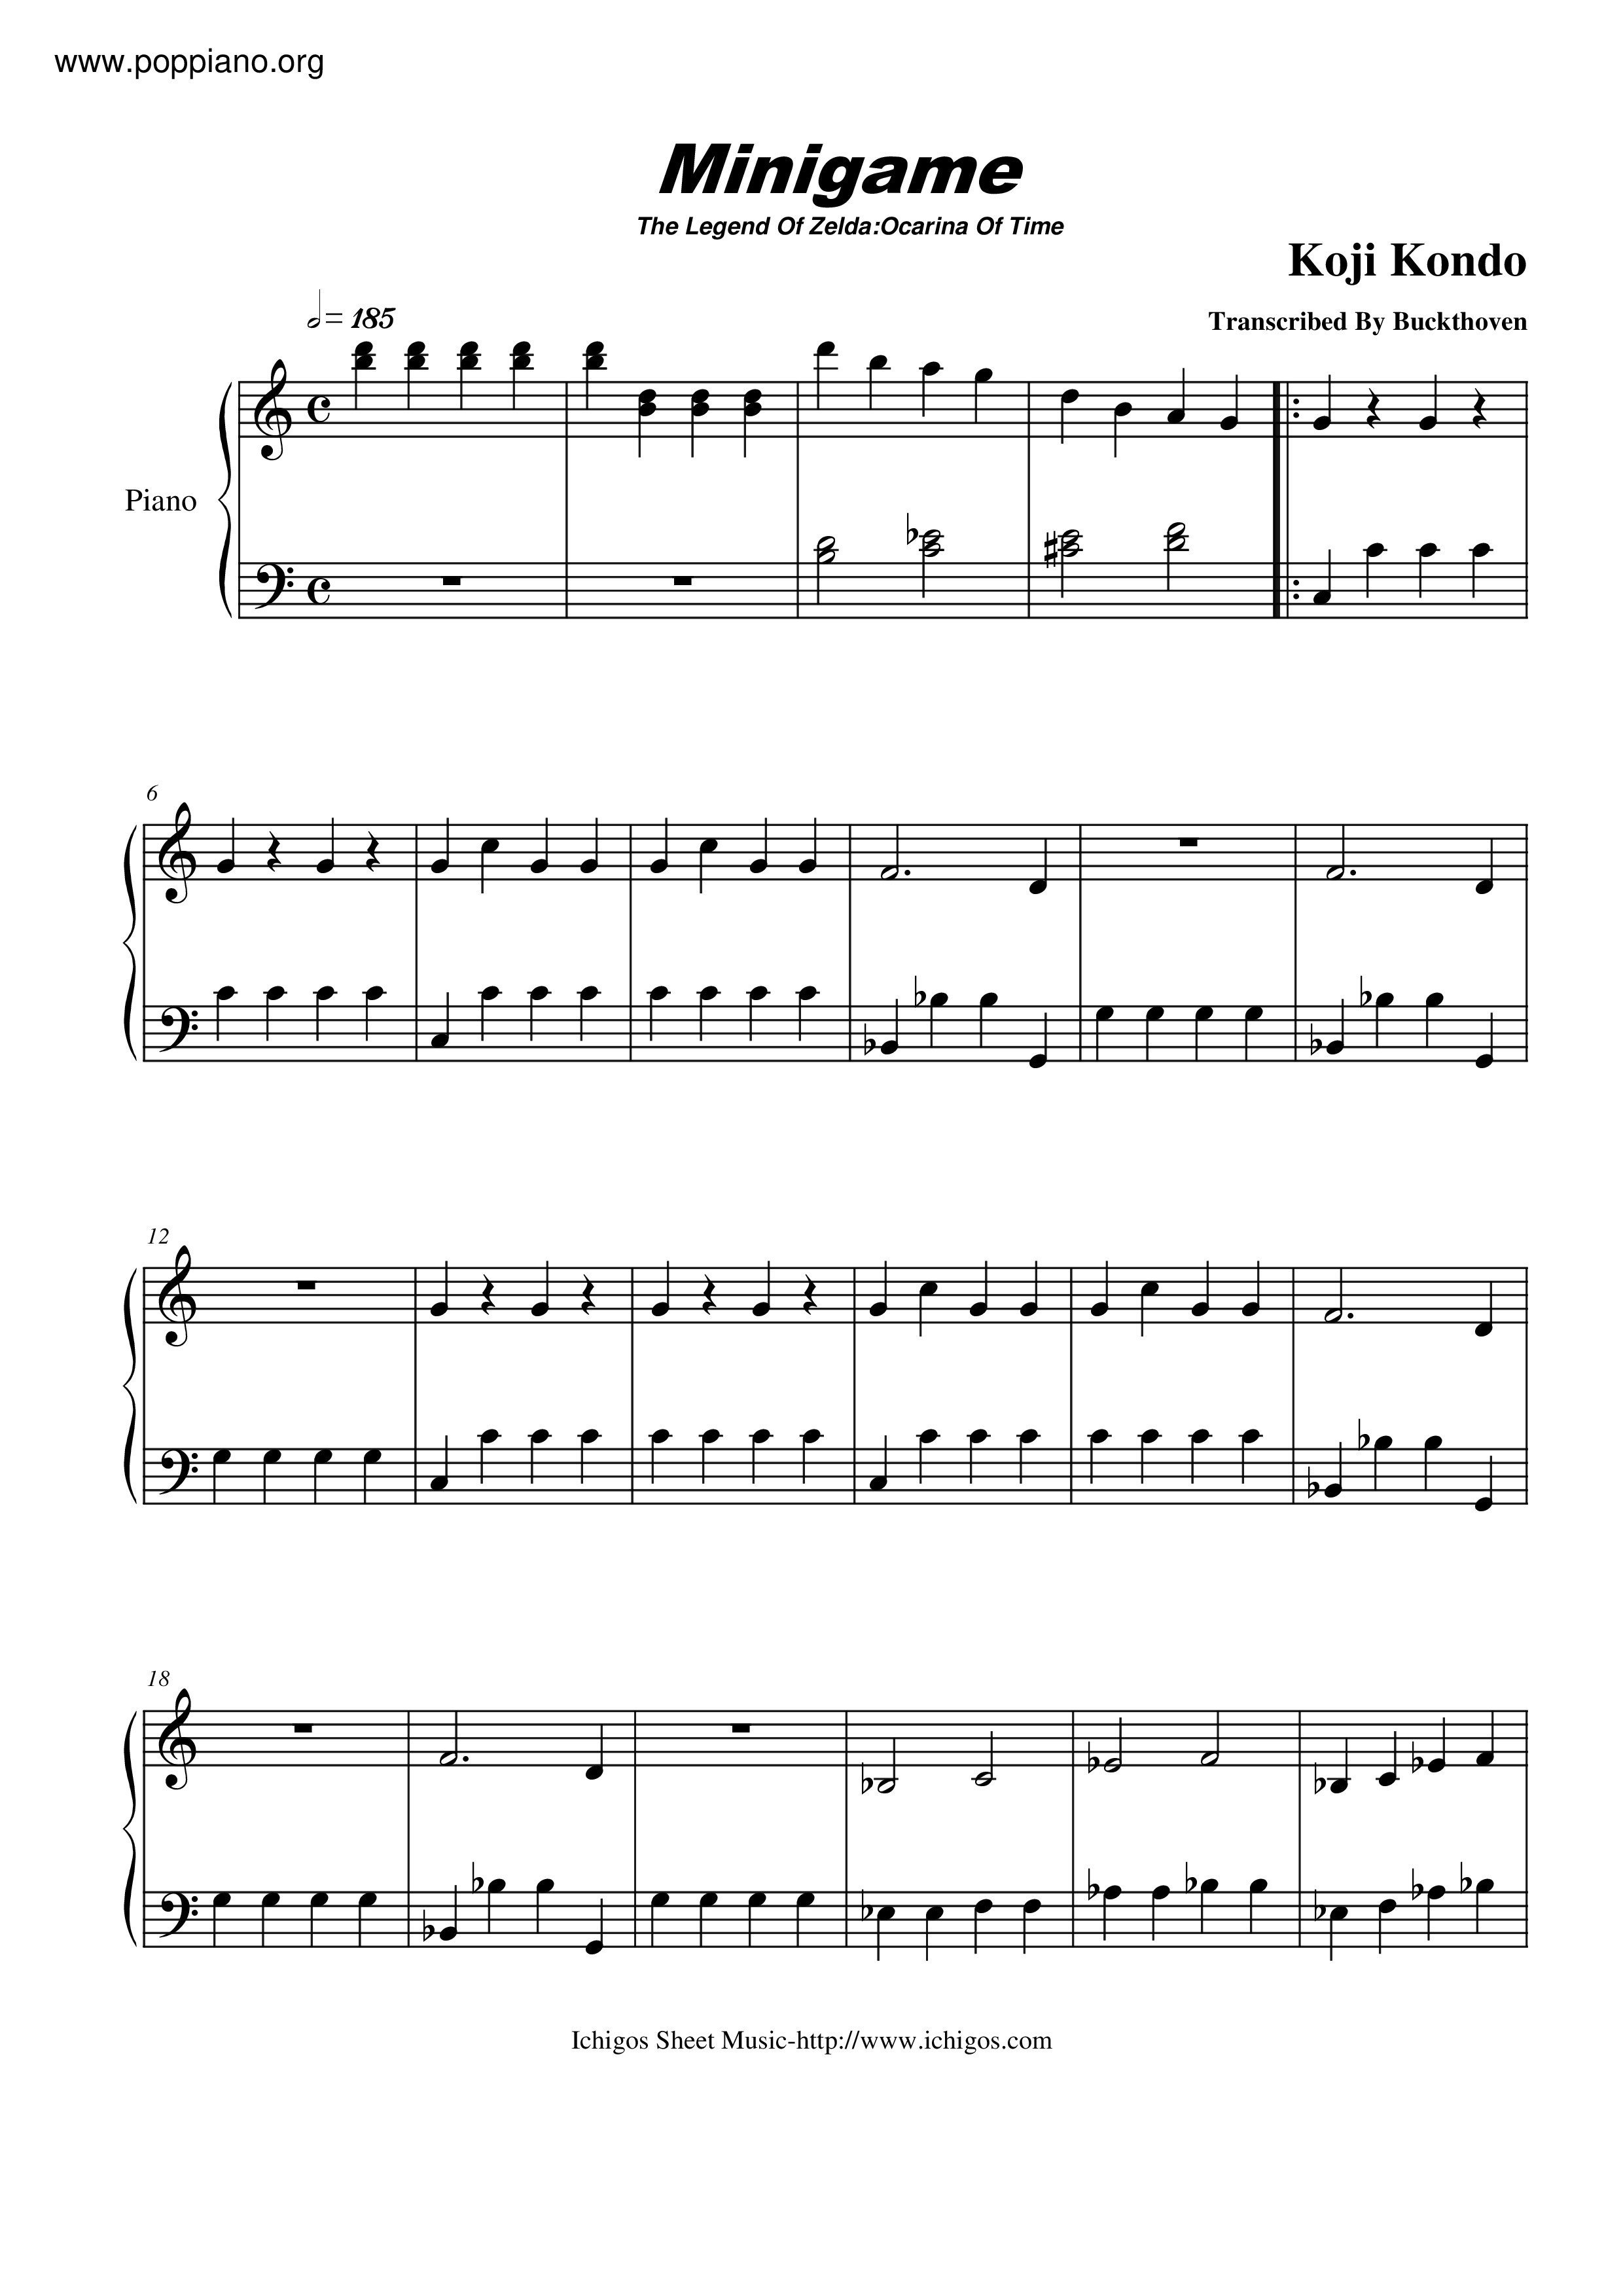 ゼルダの伝説 時のオカリナ Mini Game ピアノ譜pdf 香港ポップピアノ協会 無料pdf楽譜ダウンロード Gakufu